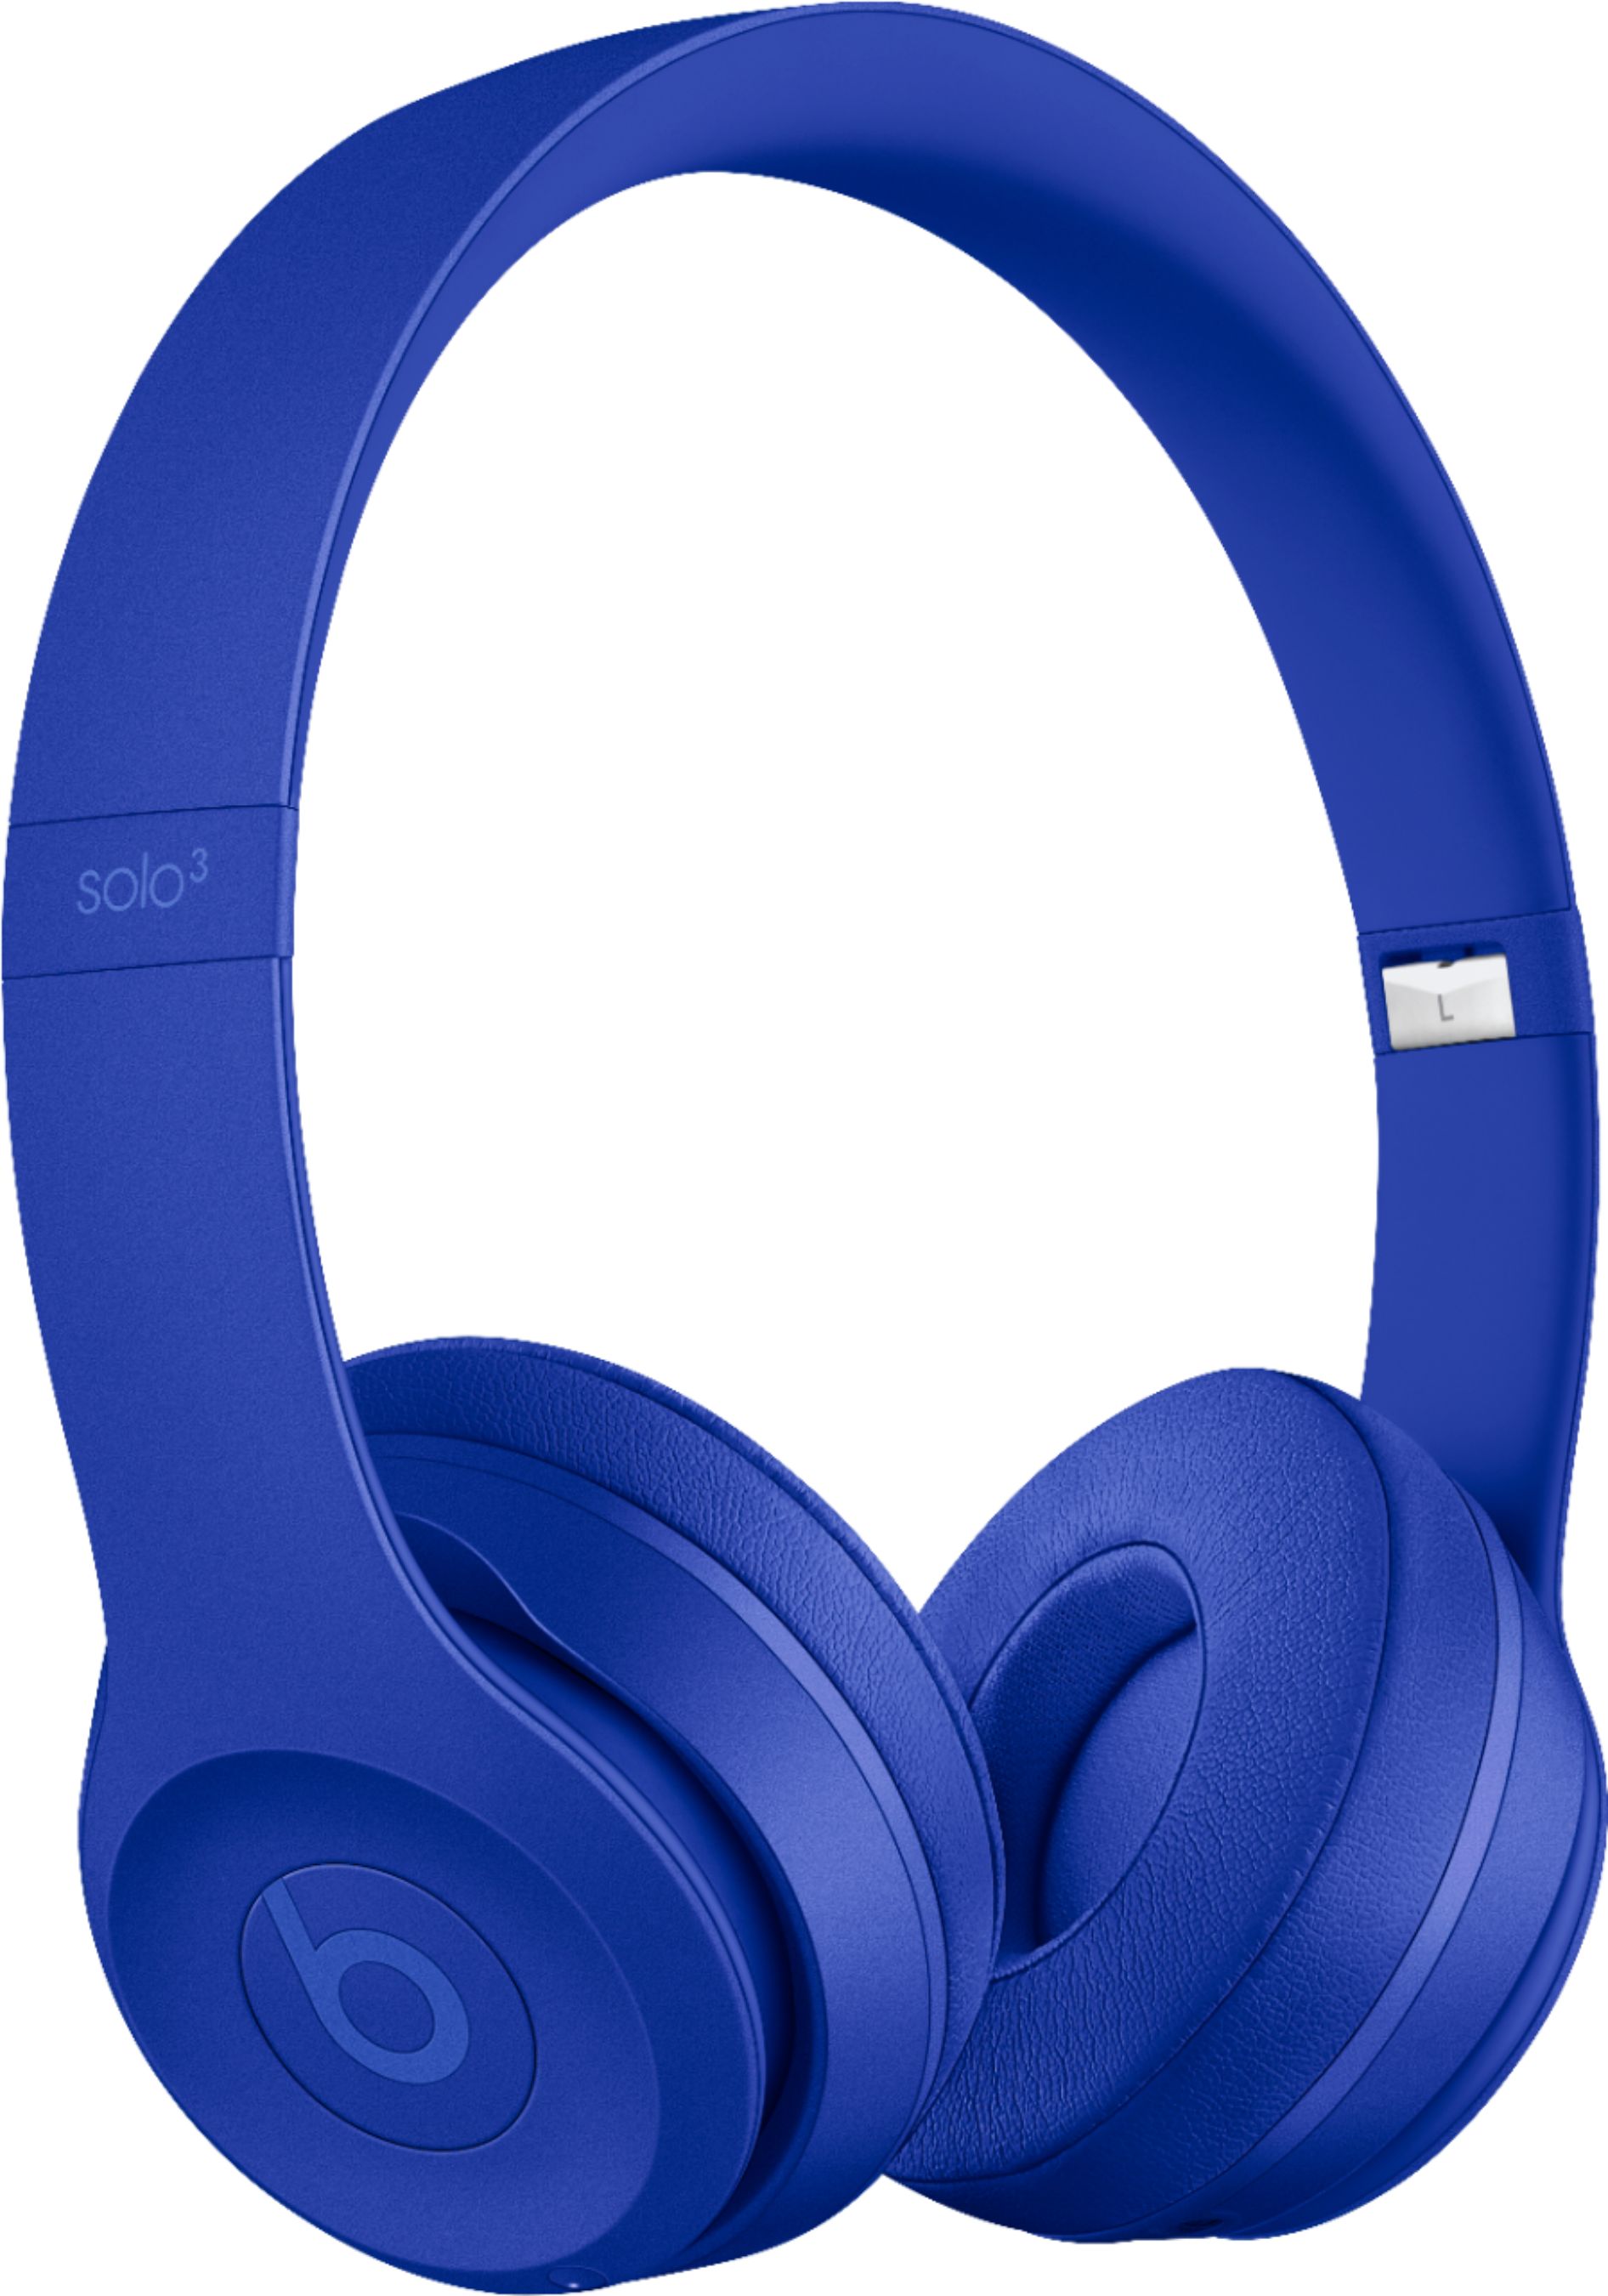 blue beats wireless earbuds